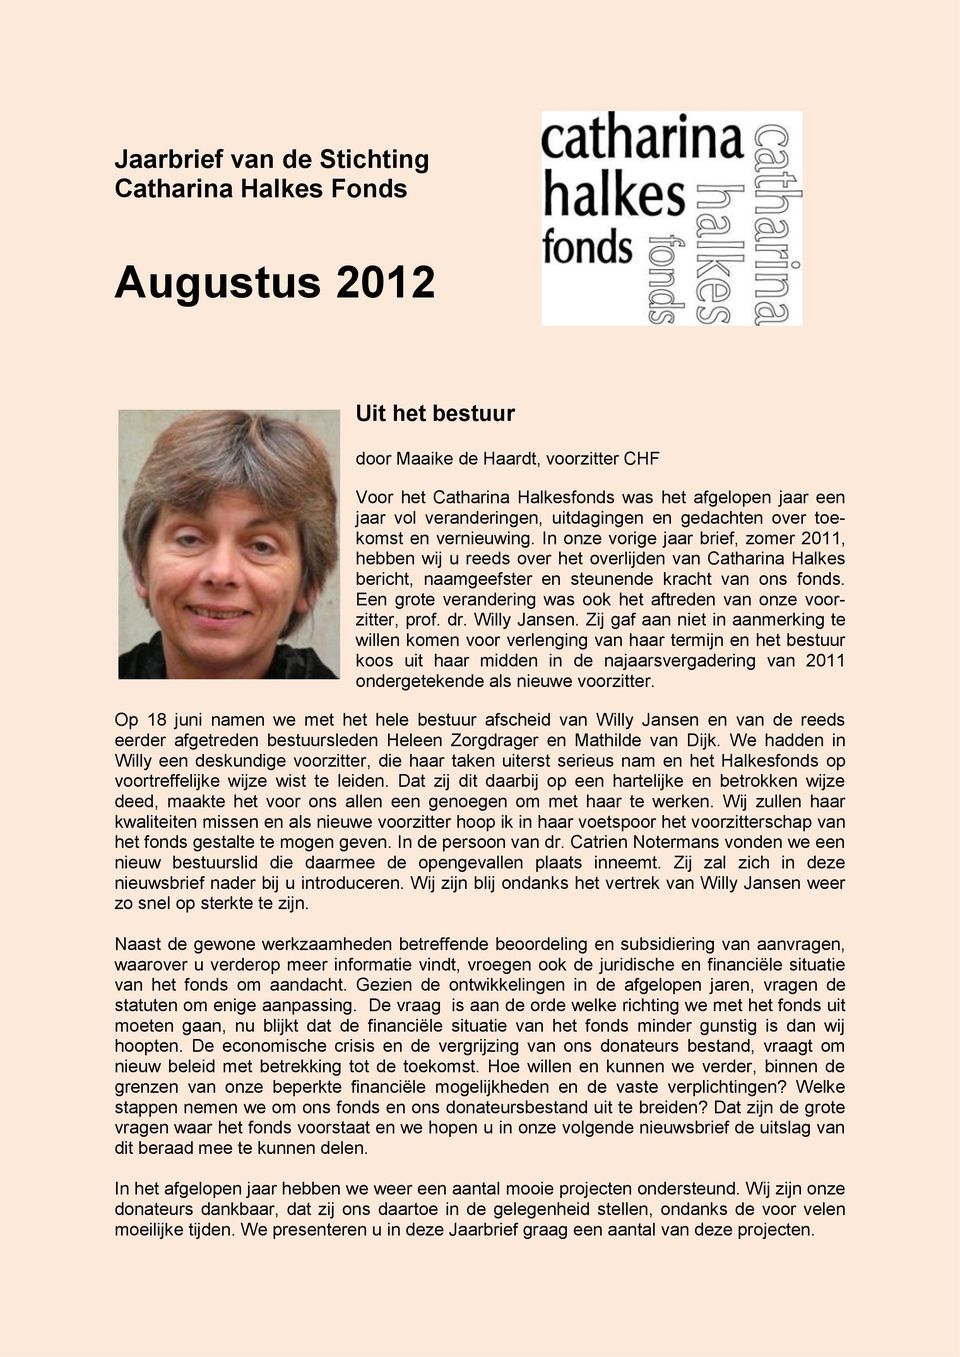 In onze vorige jaar brief, zomer 2011, hebben wij u reeds over het overlijden van Catharina Halkes bericht, naamgeefster en steunende kracht van ons fonds.